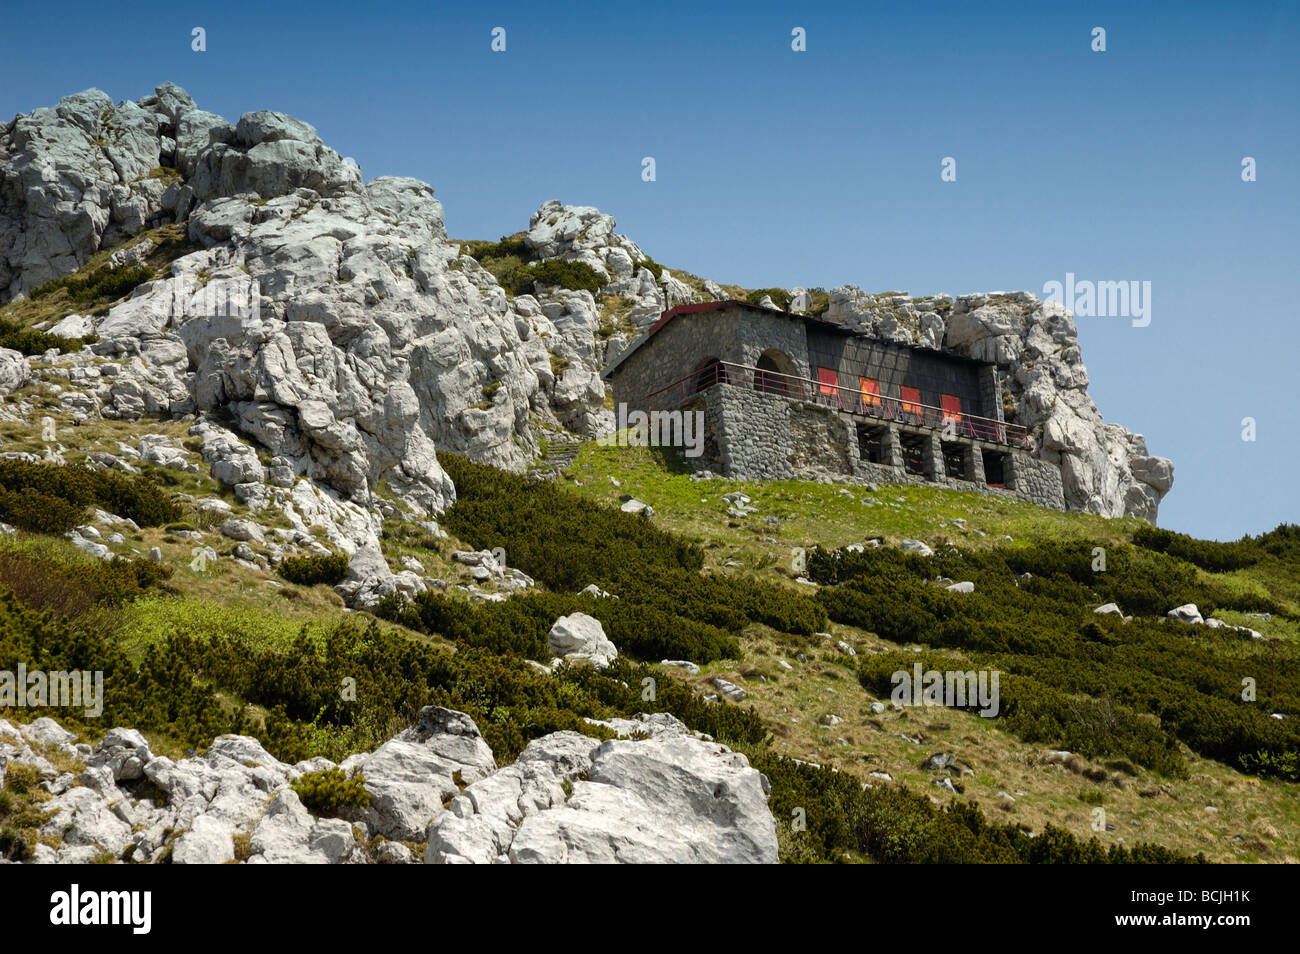 Mountain hut on Snježnik (Snjeznik) mountain in Gorski kotar, Croatia, Europe Stock Photo